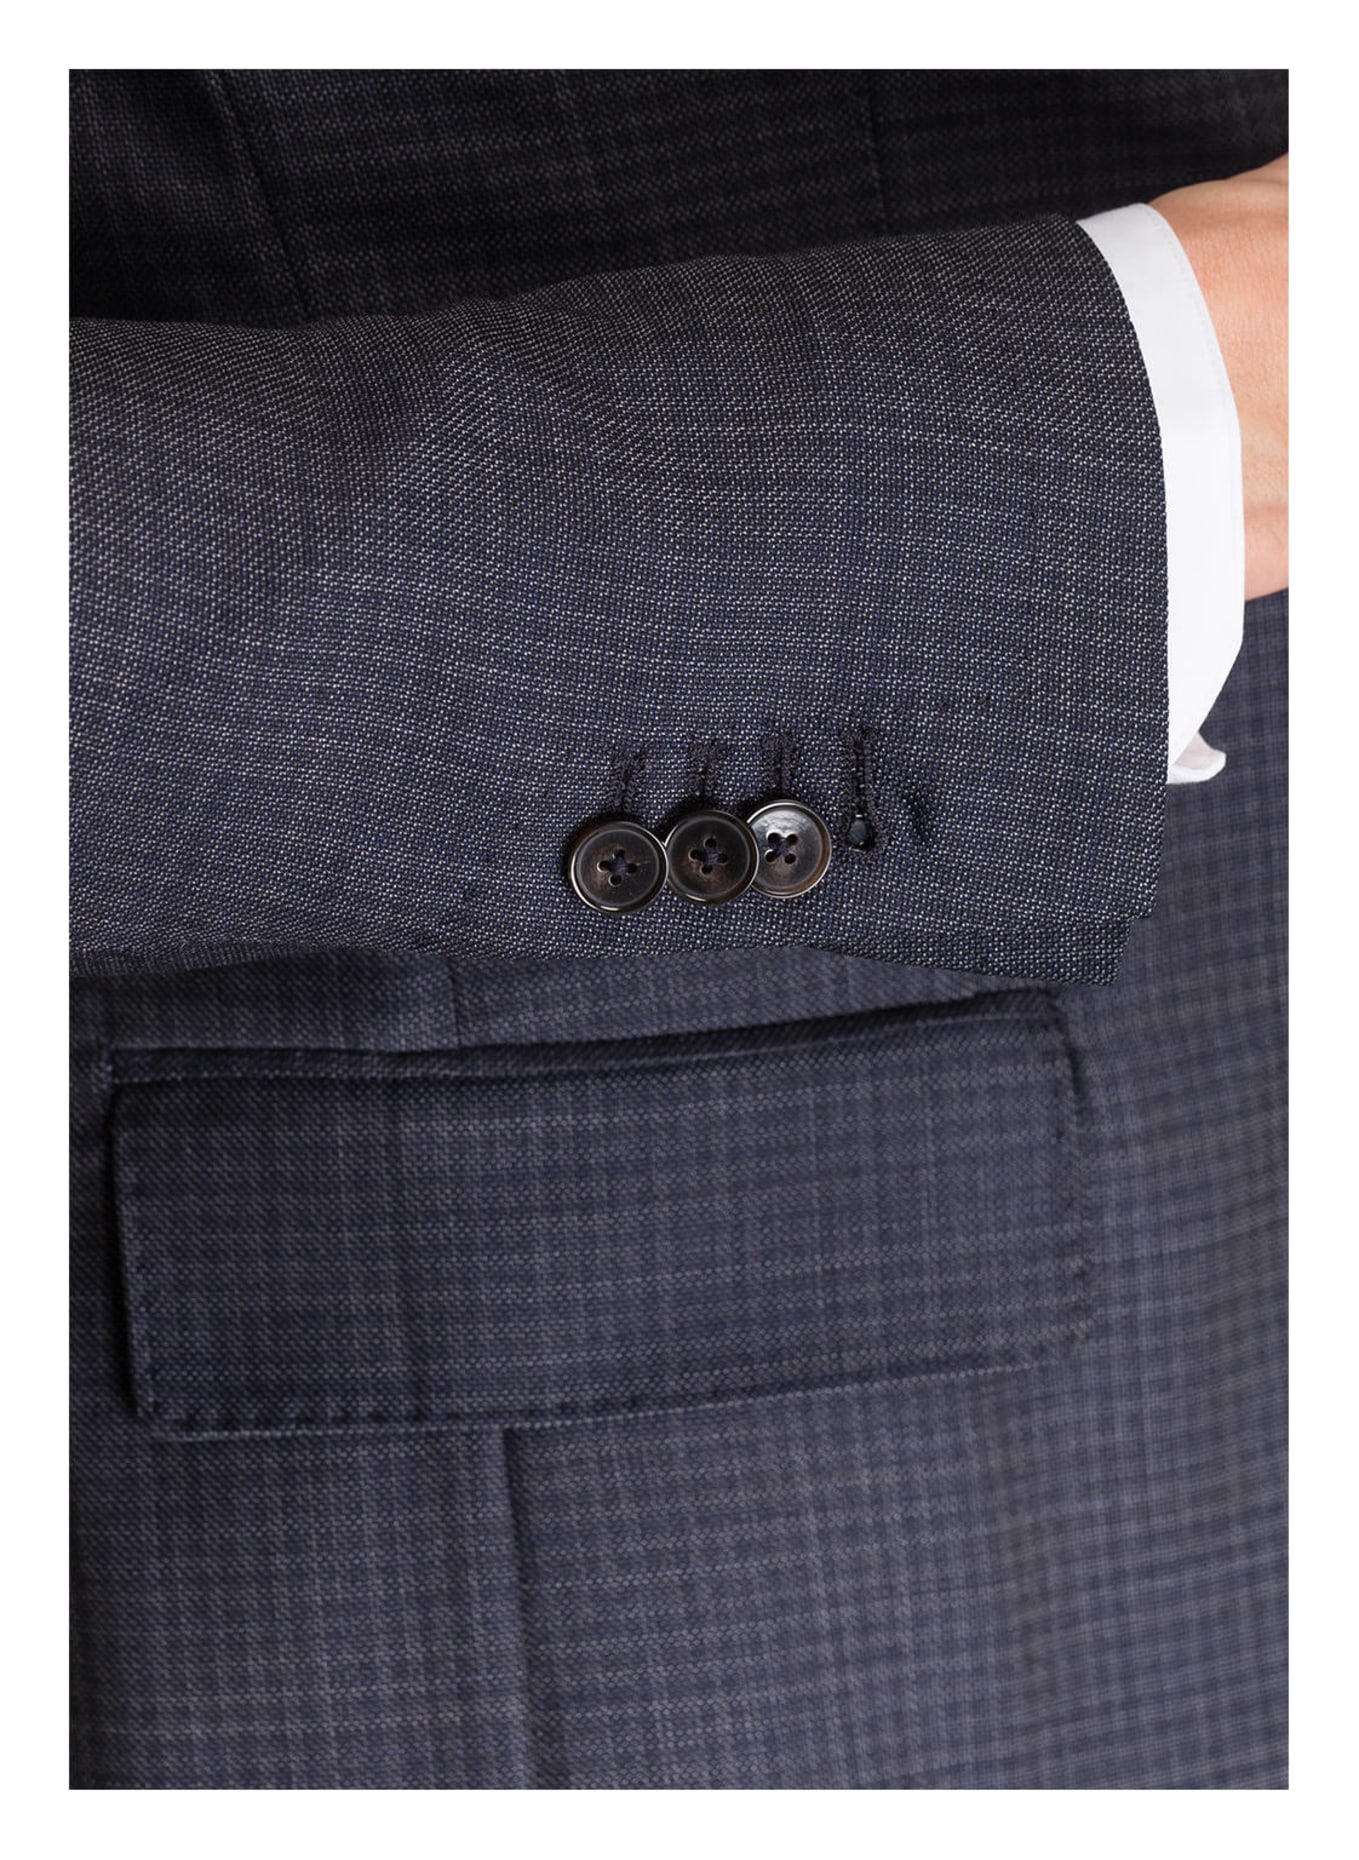 PAUL Suit jacket Slim Fit, Color: 105 navy (Image 5)